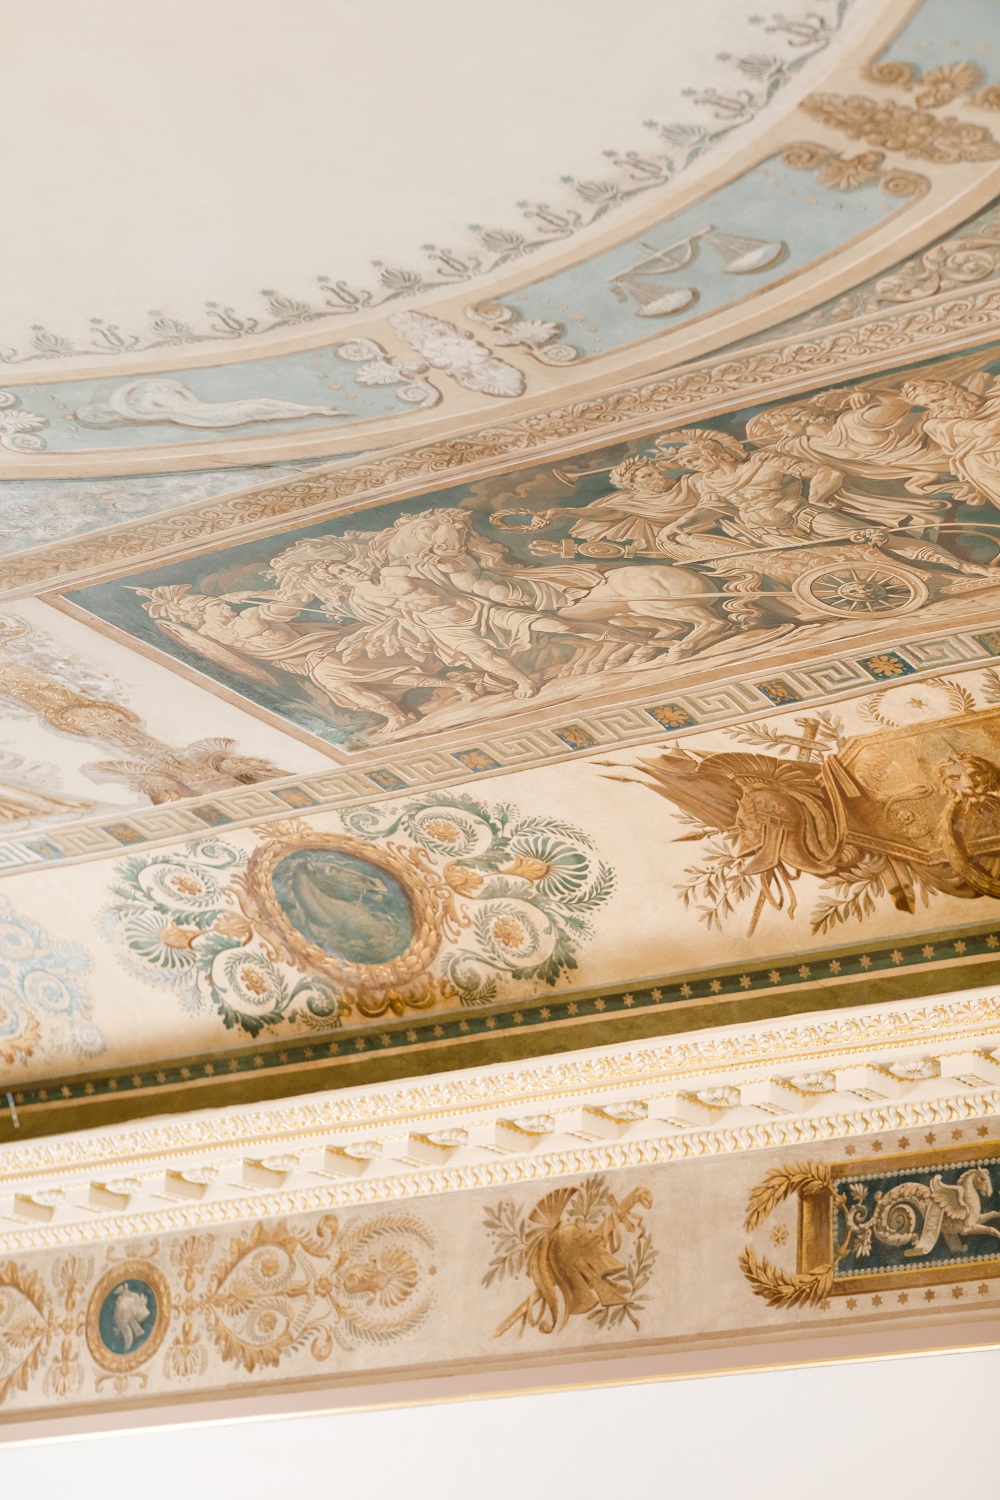 Девелопер VOS’HOD завершил реставрацию росписи Джованни Батиста Скотти (1776—1830) в комплексе с Cheval Court, ранее — здании Мастерового двора Придворного конюшенного ведомства в Санкт-Петербурге